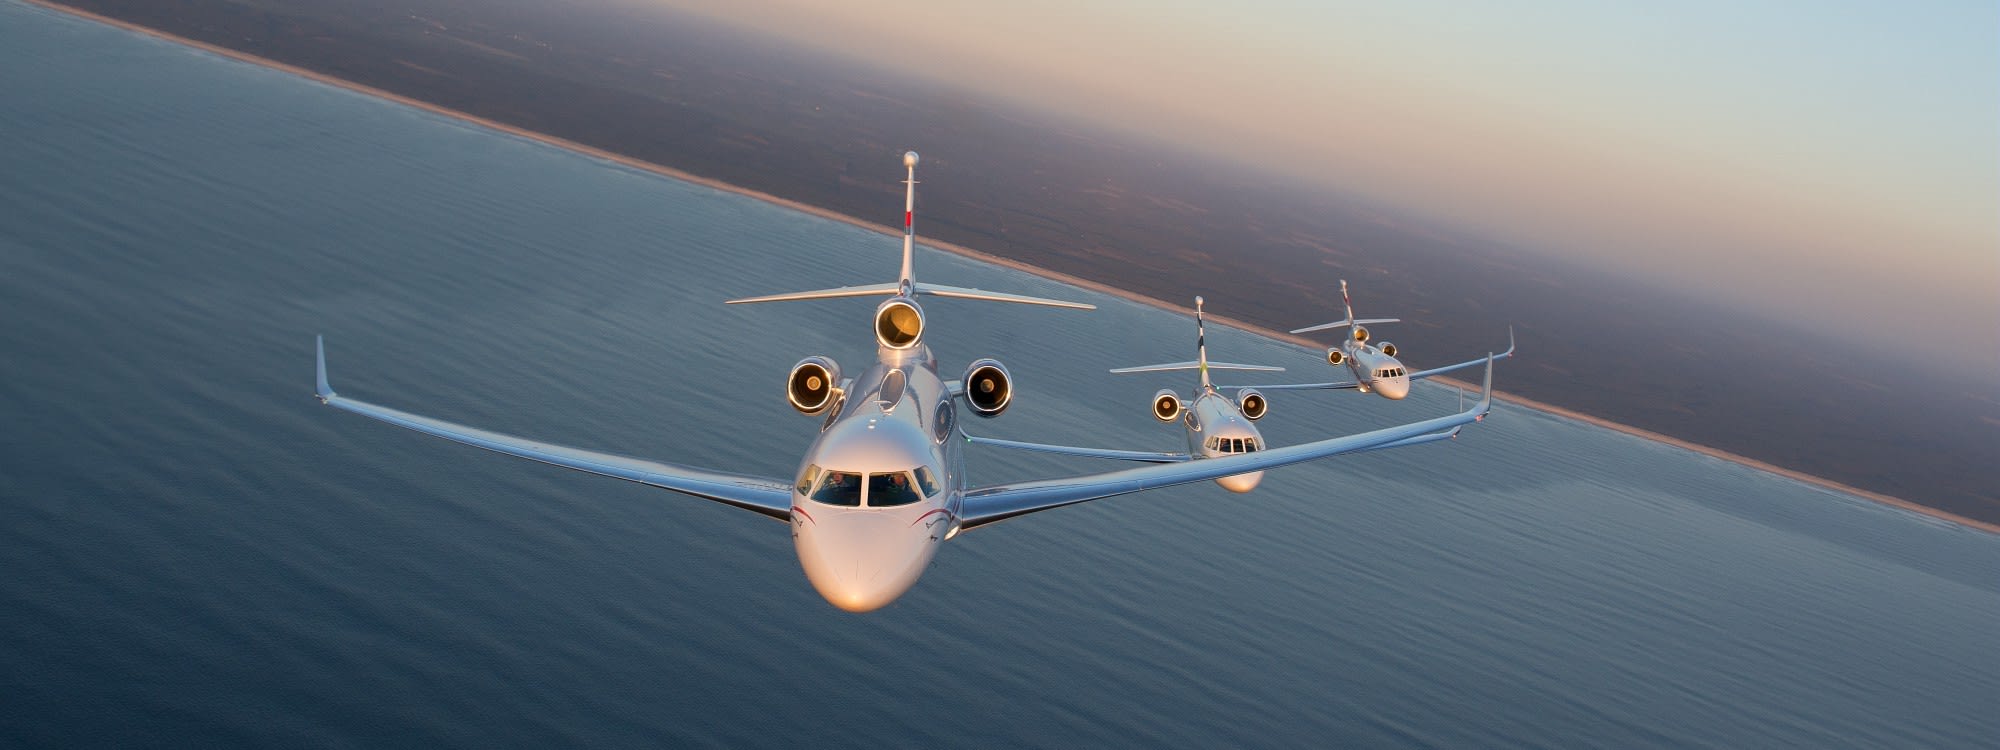 Falcon 2000S, Falcon 7X and Falcon 900LX in flight